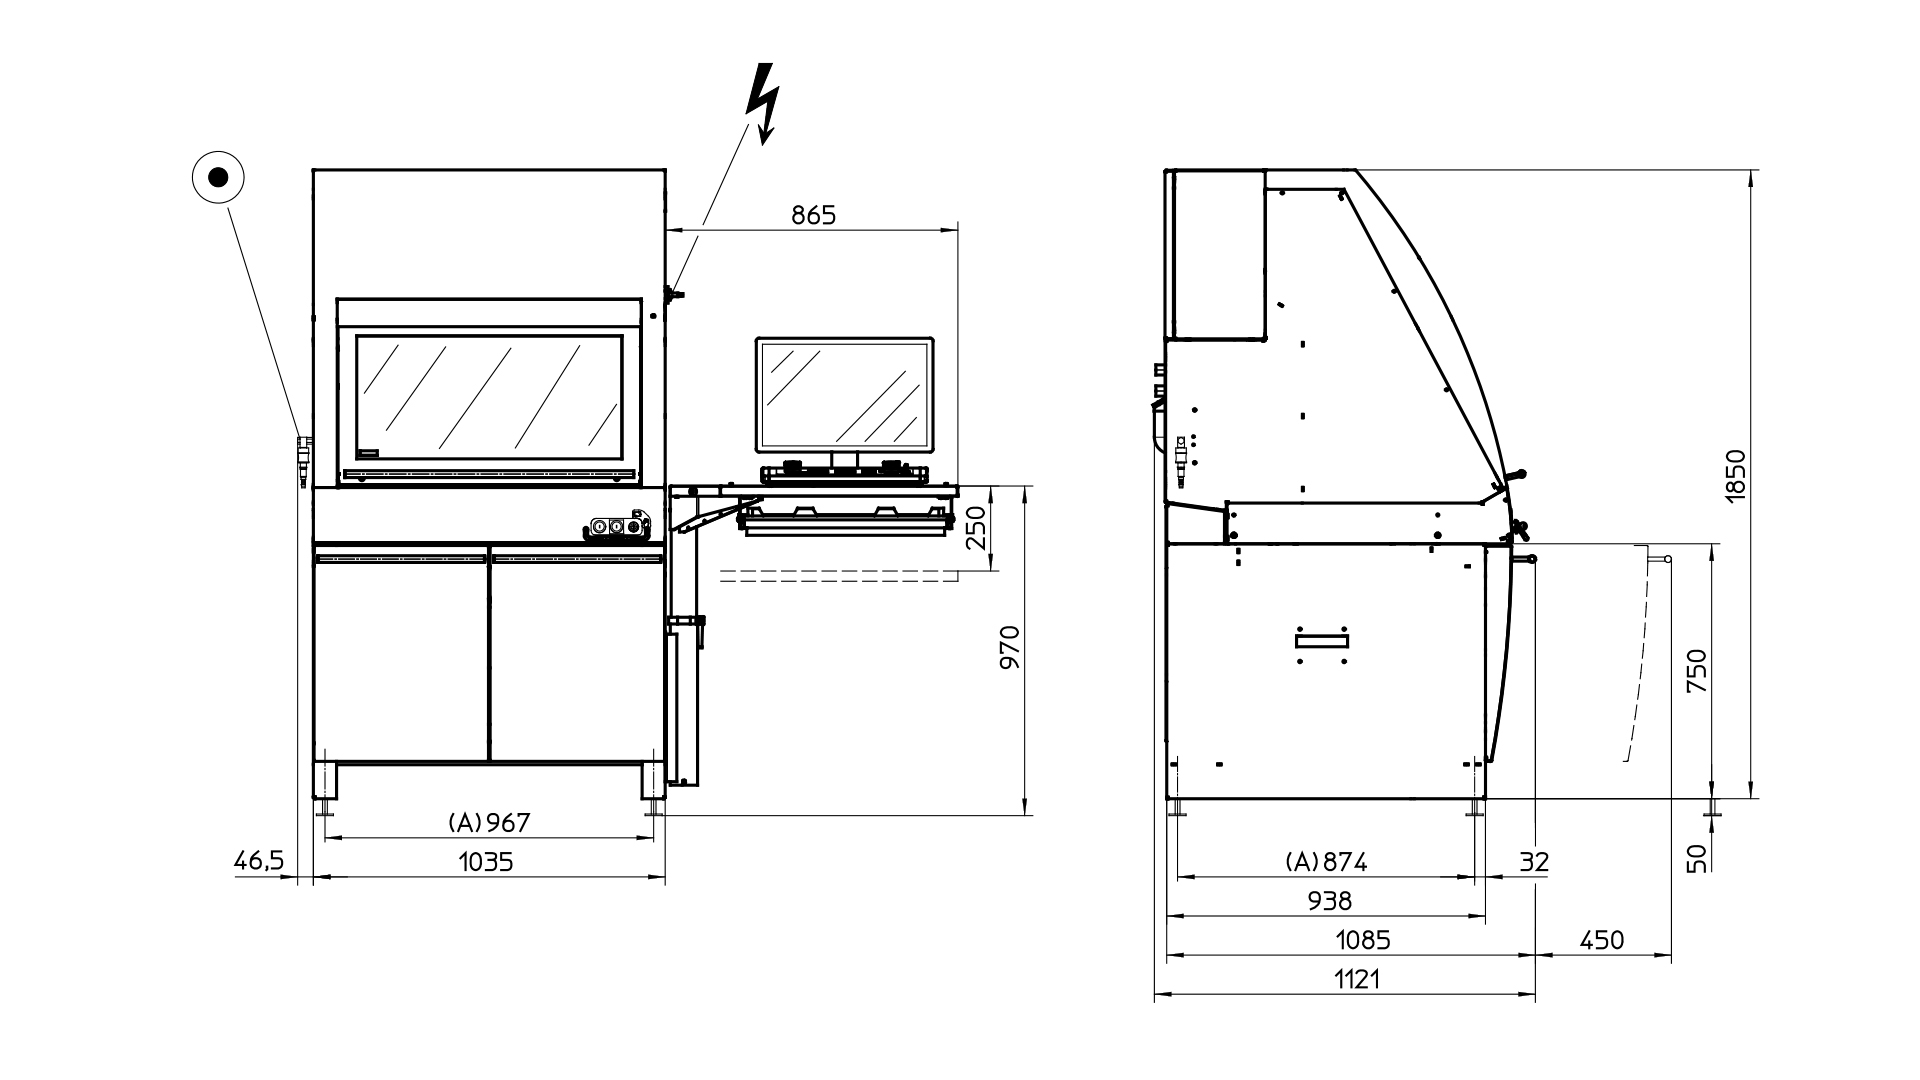 Emco Concept Mill 105: CNC-Fräsmaschine für die Ausbildung
Aufstellplan